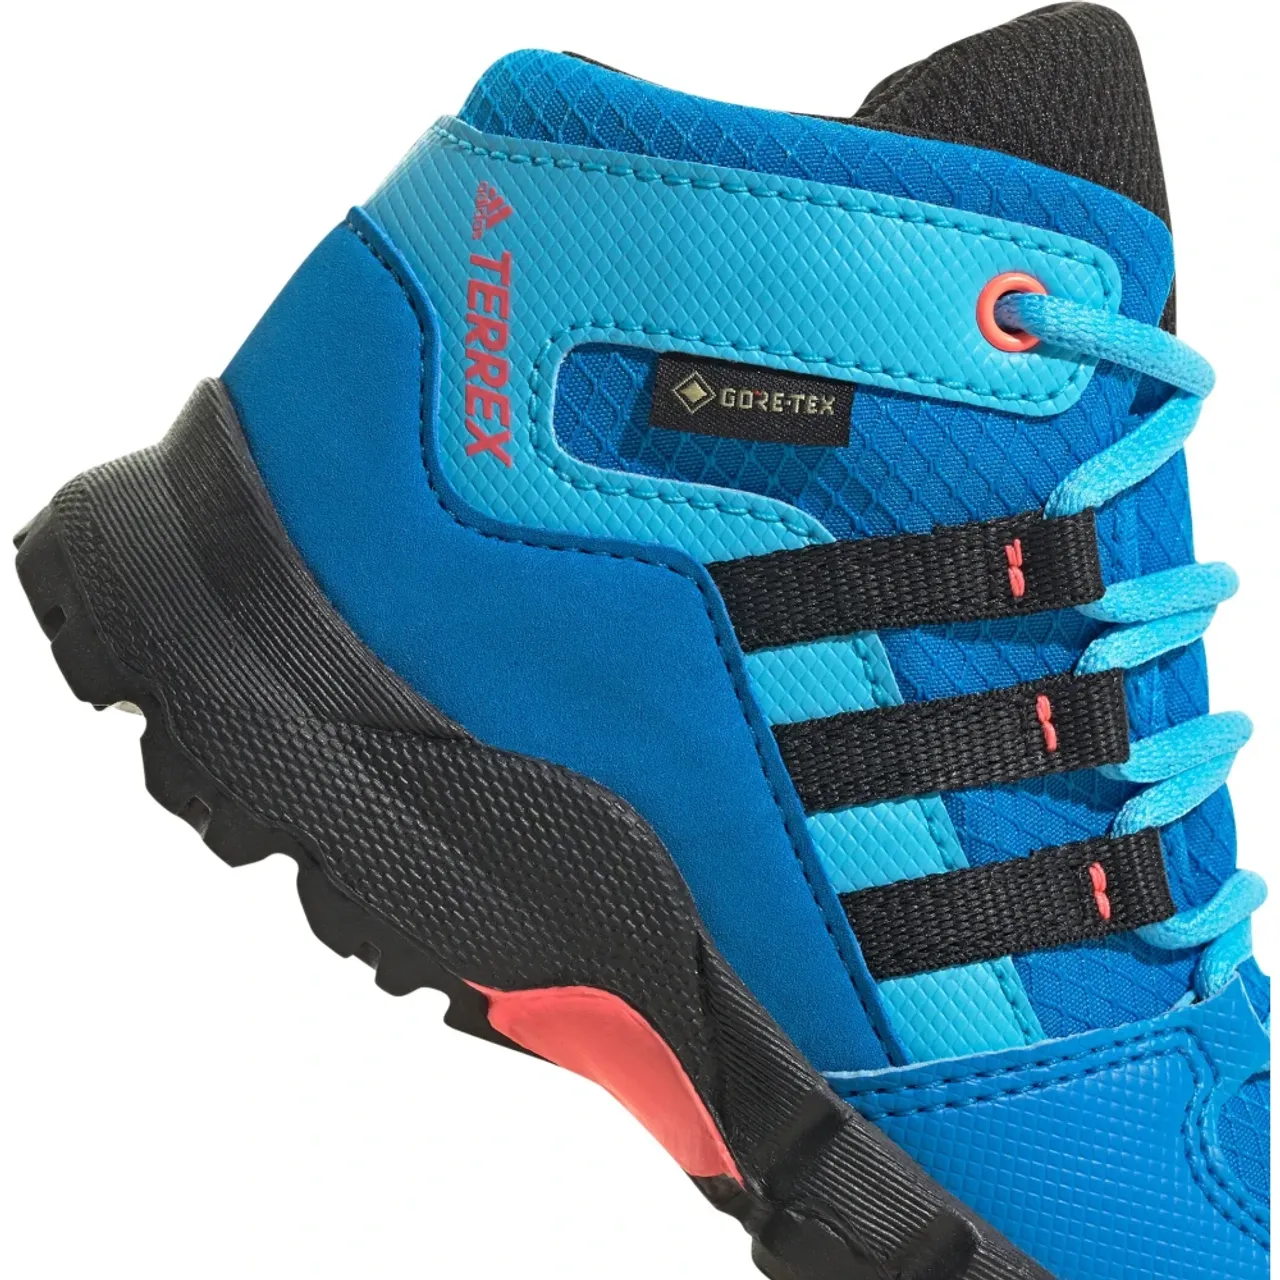 Trailblazer GTX Stiefel Adidas